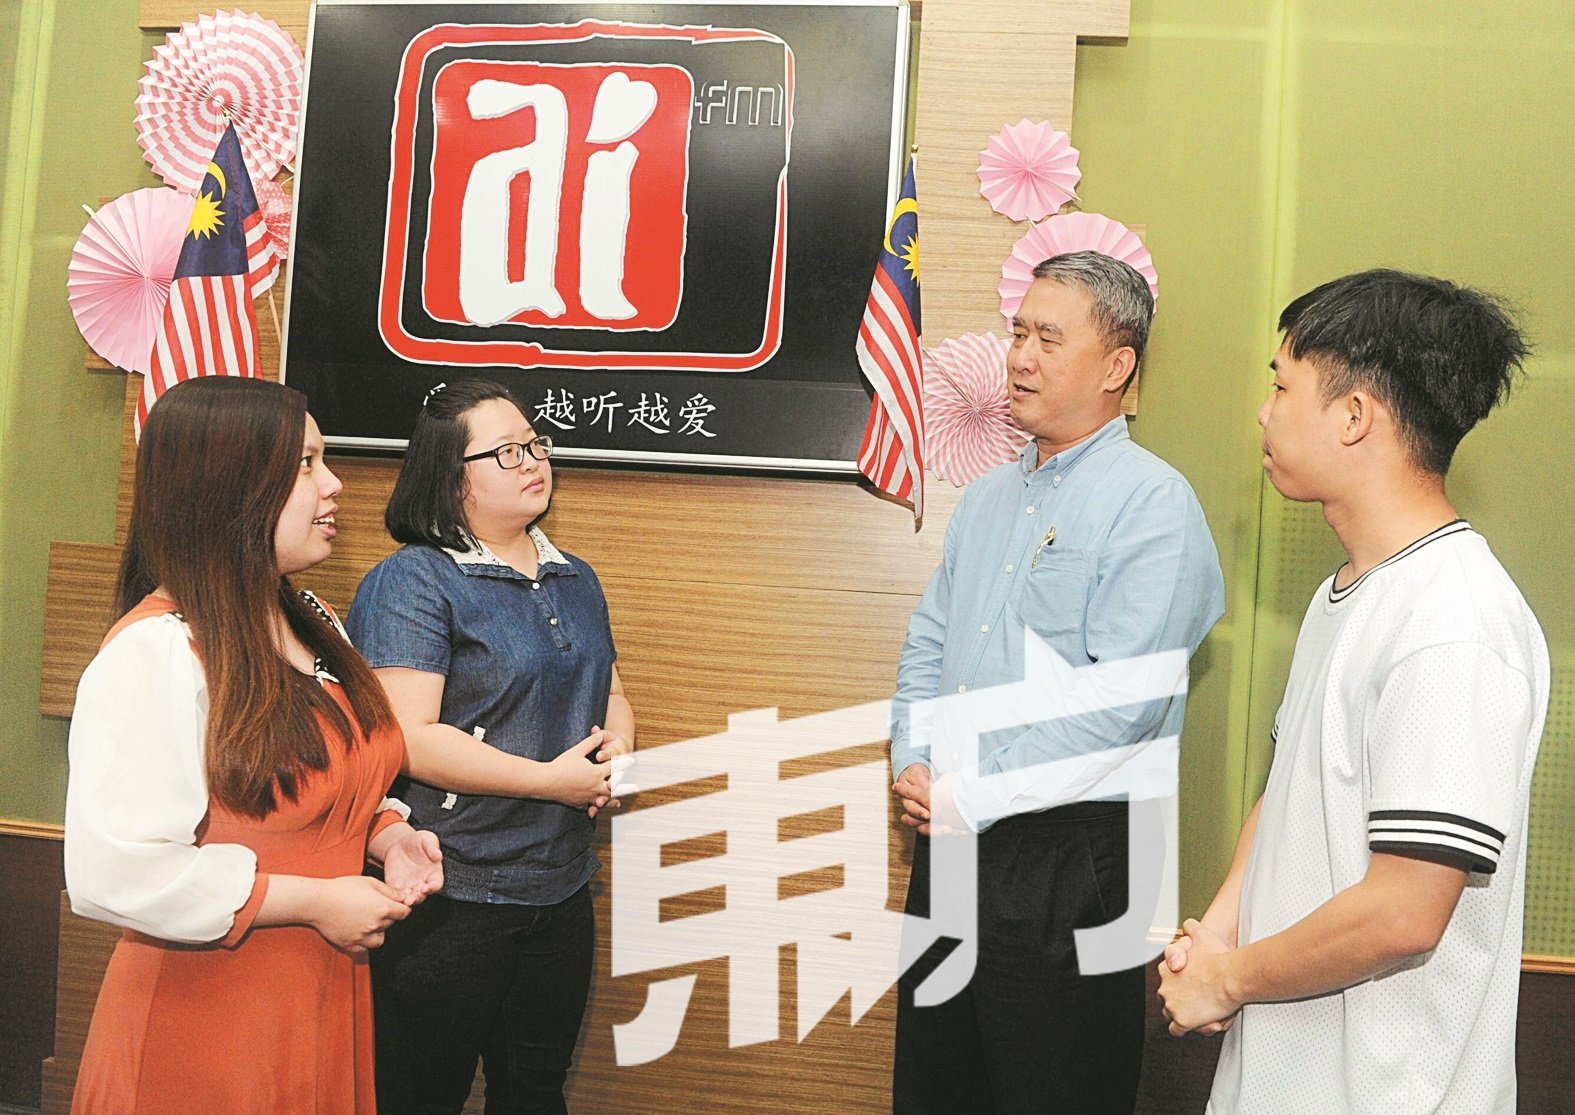 王清华（右2）呼吁更多华小董家教同仁能申办特殊教育班，让特殊儿童也能与普通孩子享有同等的教育机会。左起丘淑霖、叶芯（金眉）和谢劲程。（摄影：徐慧美）